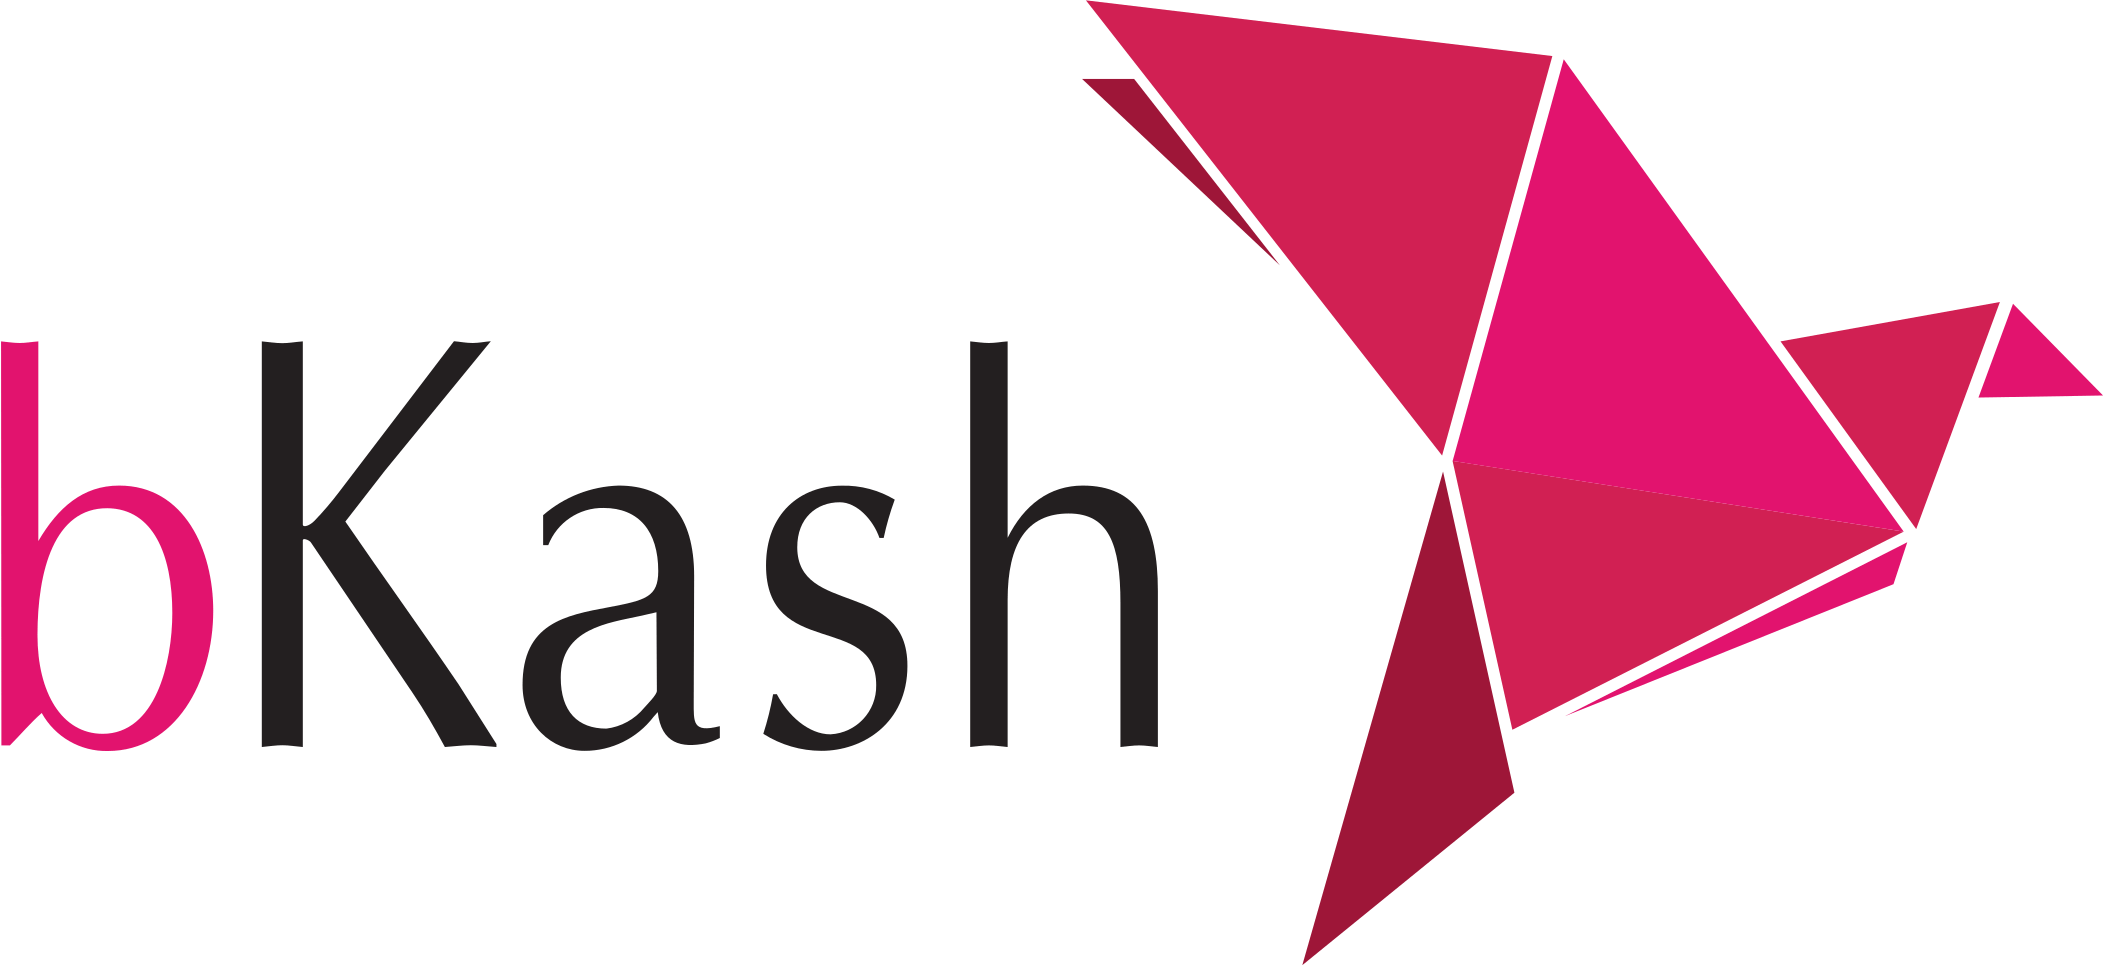 BKash-Logo.wine